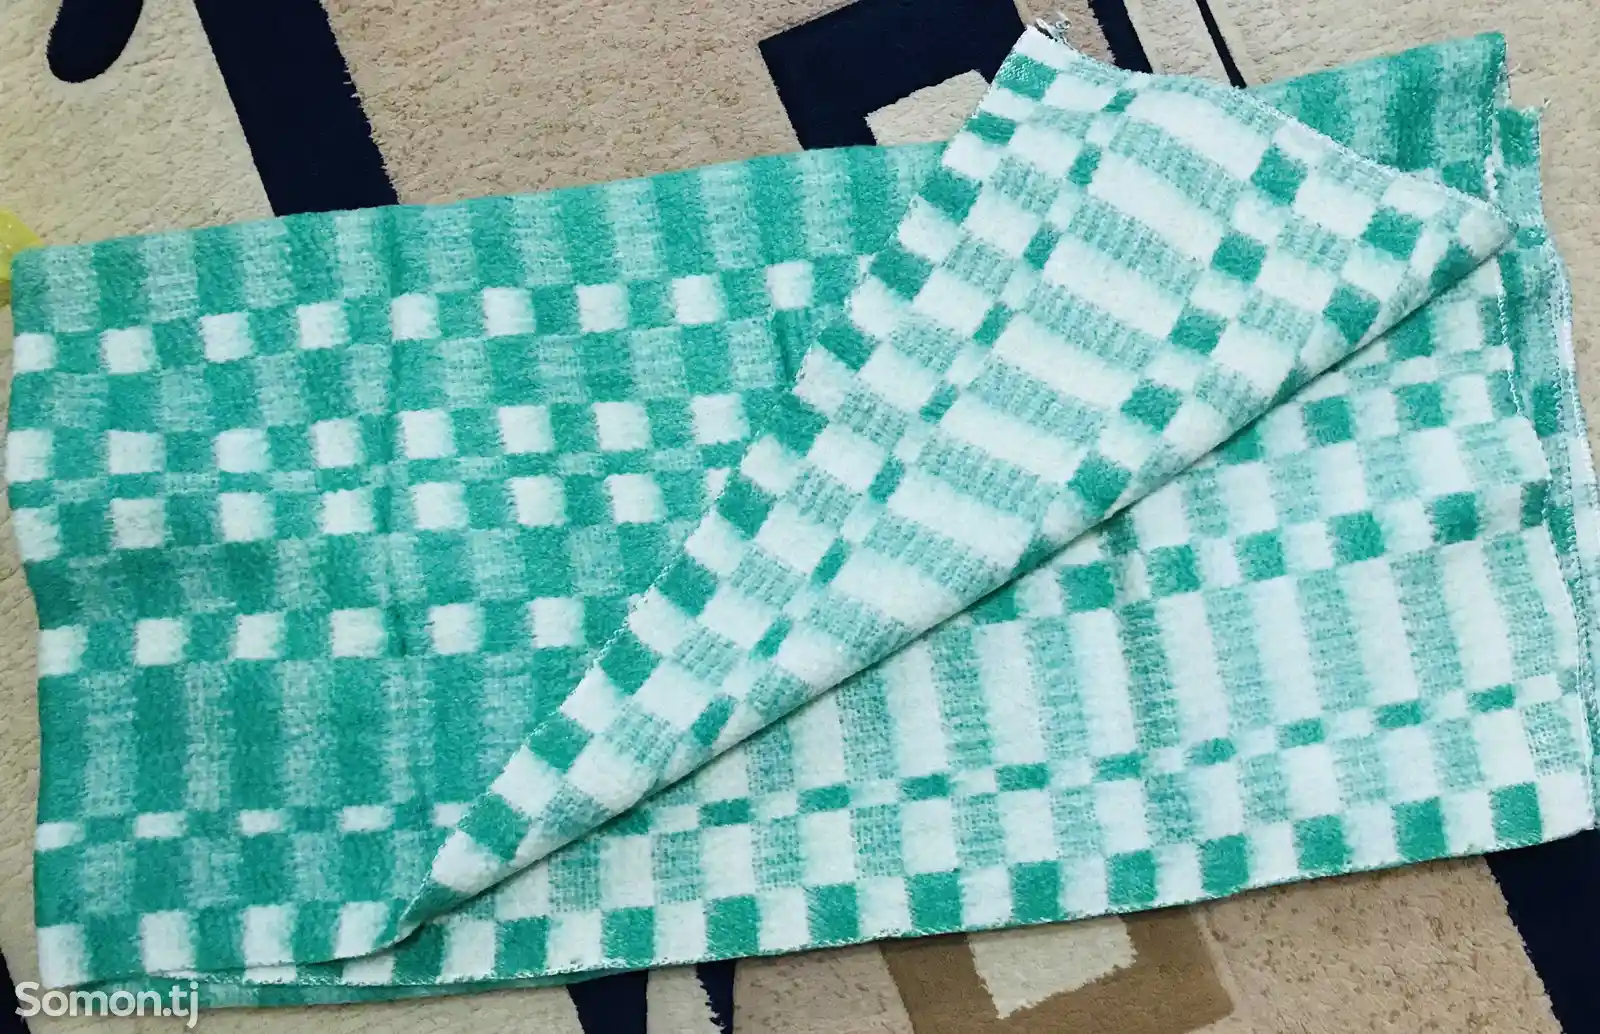 Шерстяное одеяло